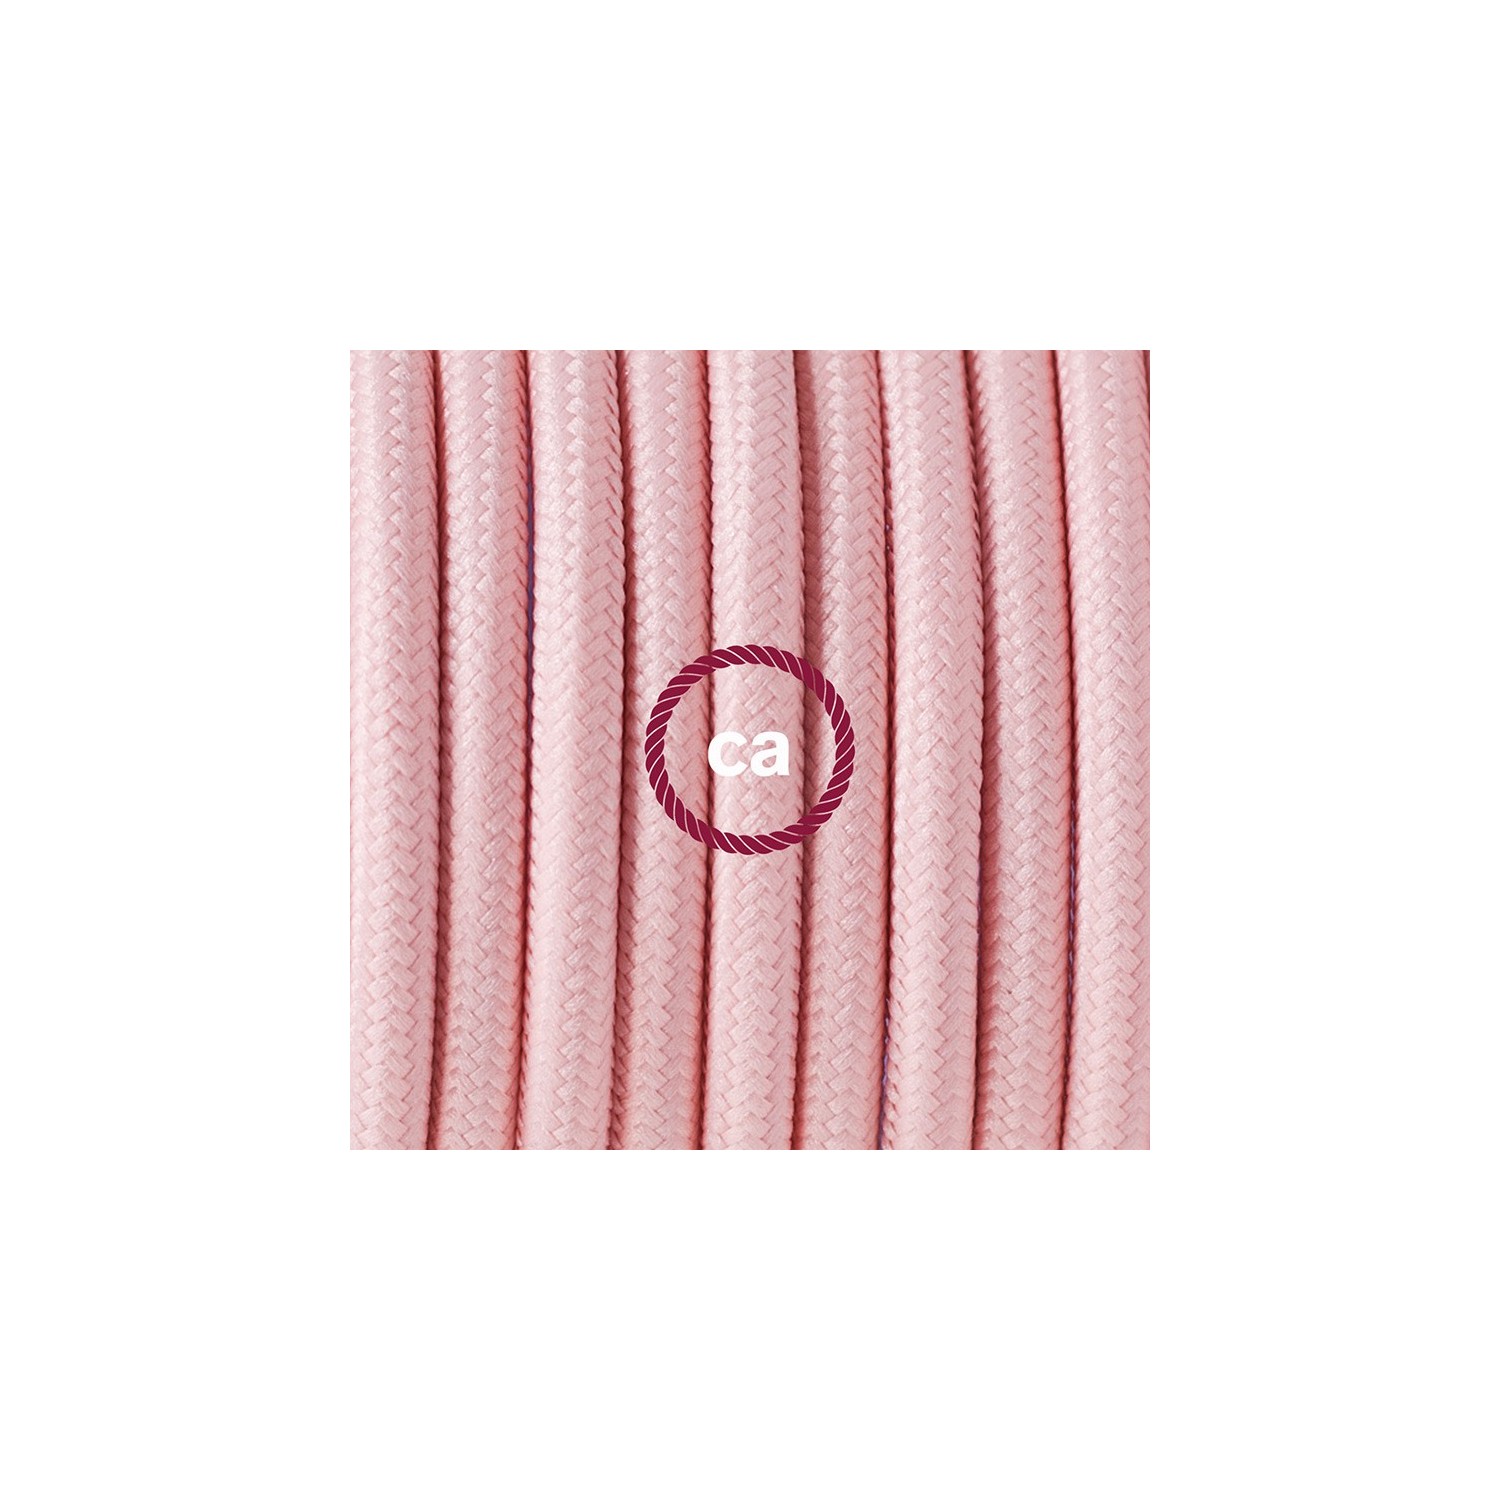 Καλωδίωση πορτατίφ με Υφασμάτινο Καλώδιο RM16 Ροζ - 1.80 m. Με ενδιάμεσο διακοπτάκι και φις.